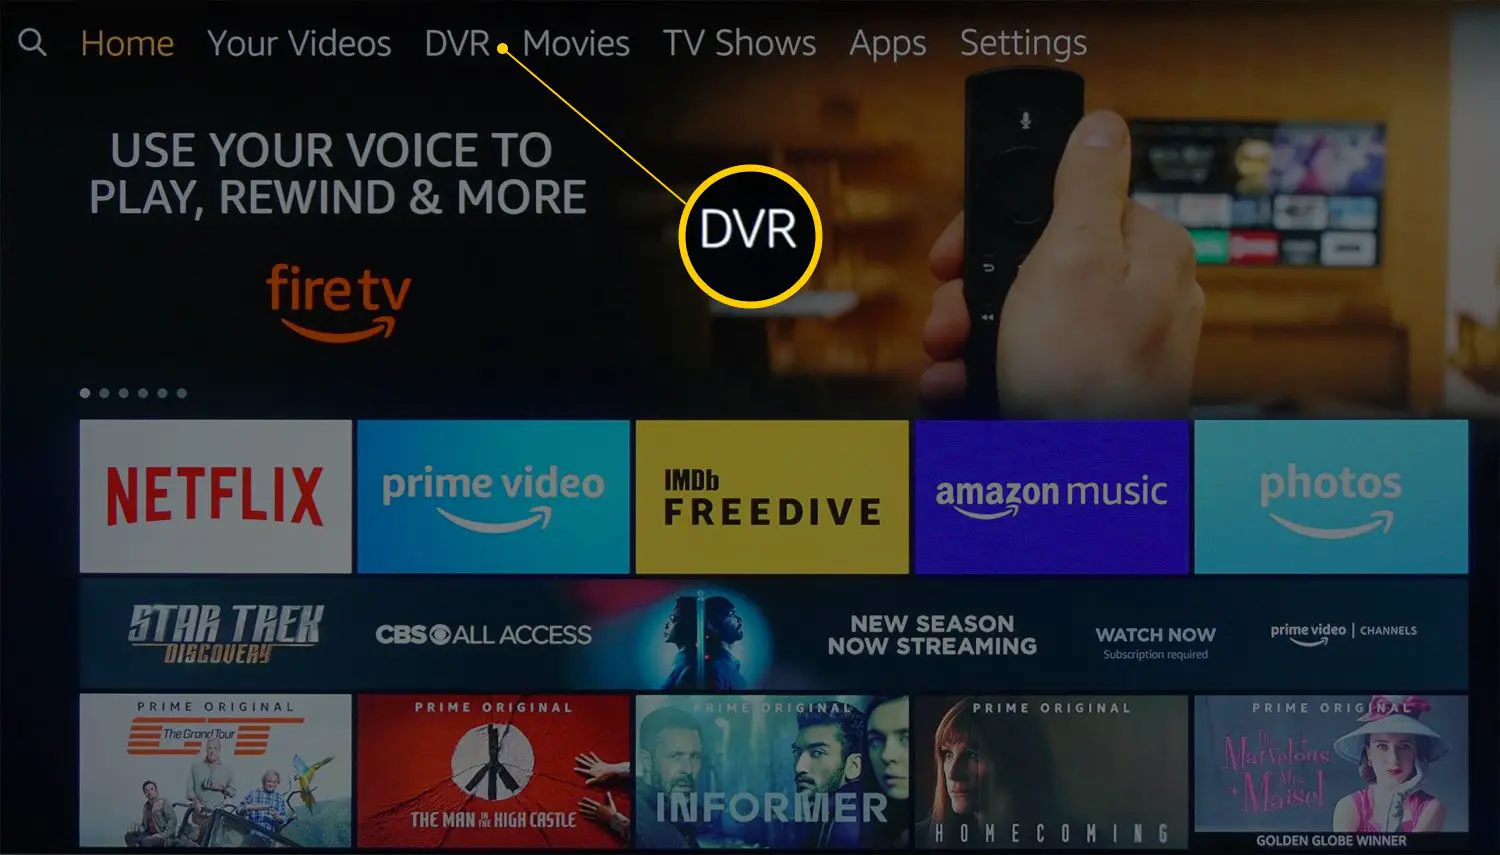 Tela inicial da Fire TV com reformulação da categoria DVR